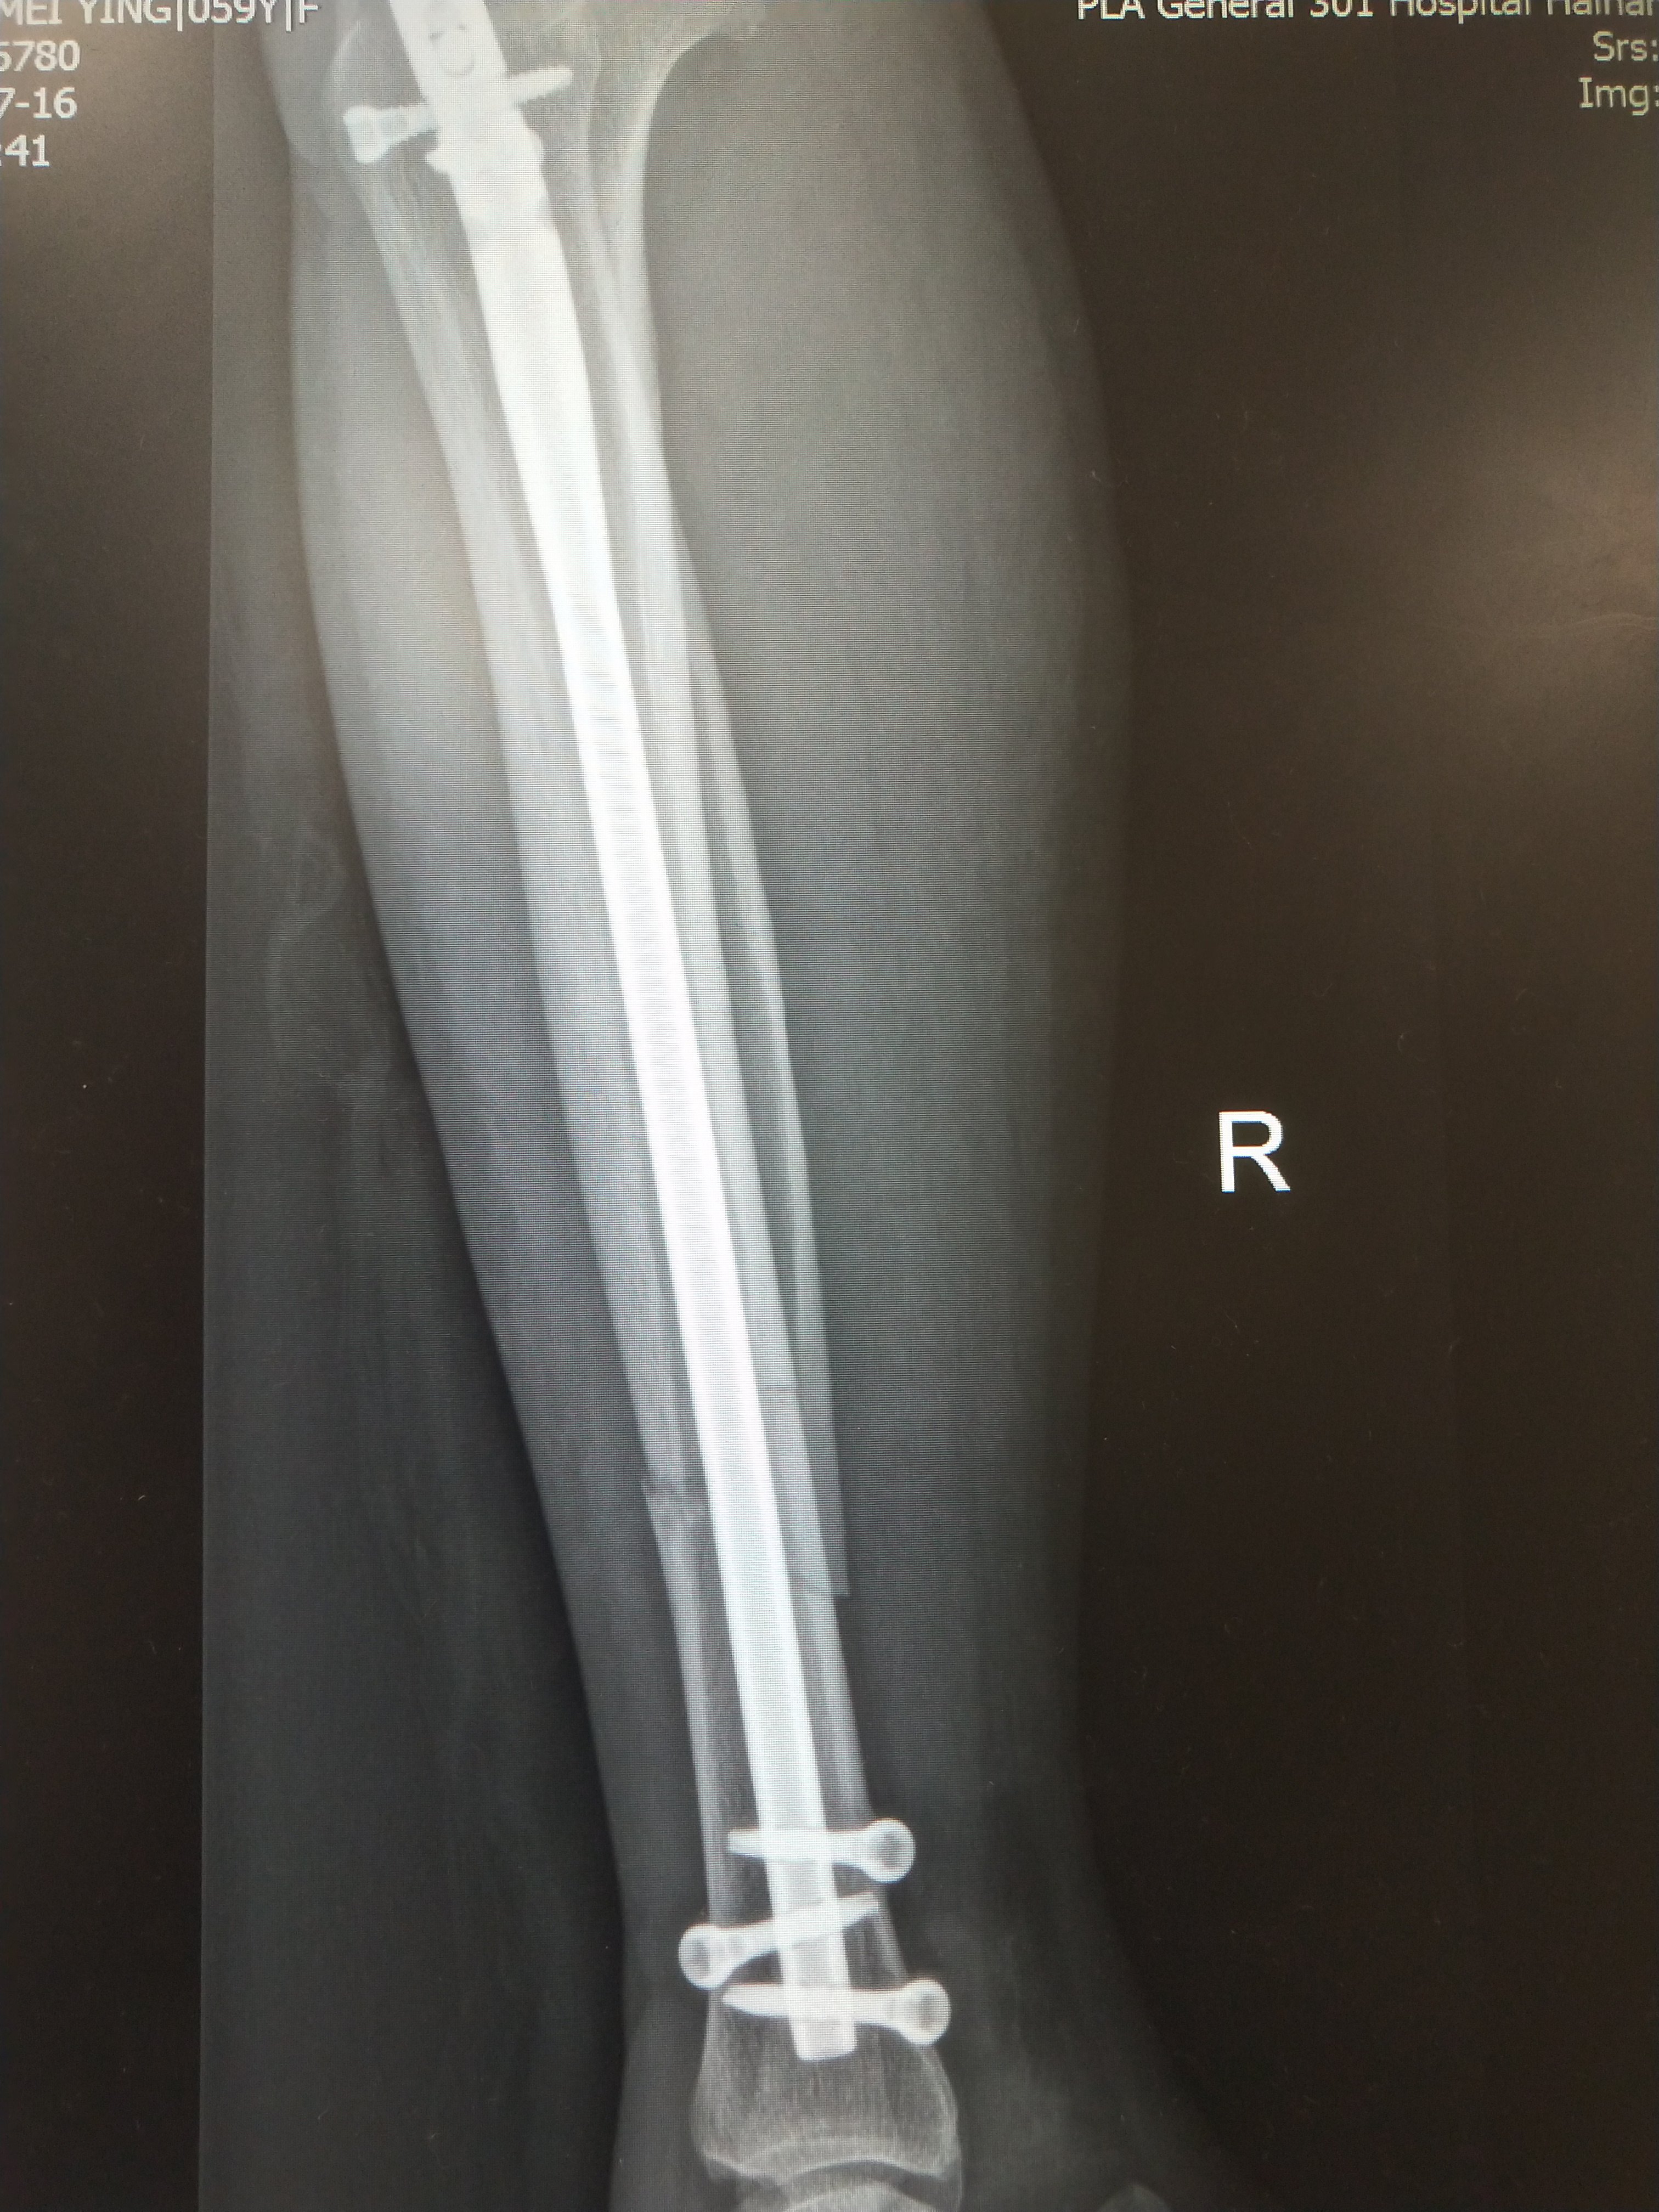 小腿胫腓骨骨折,微创髓内钉固定,第二天下地负重